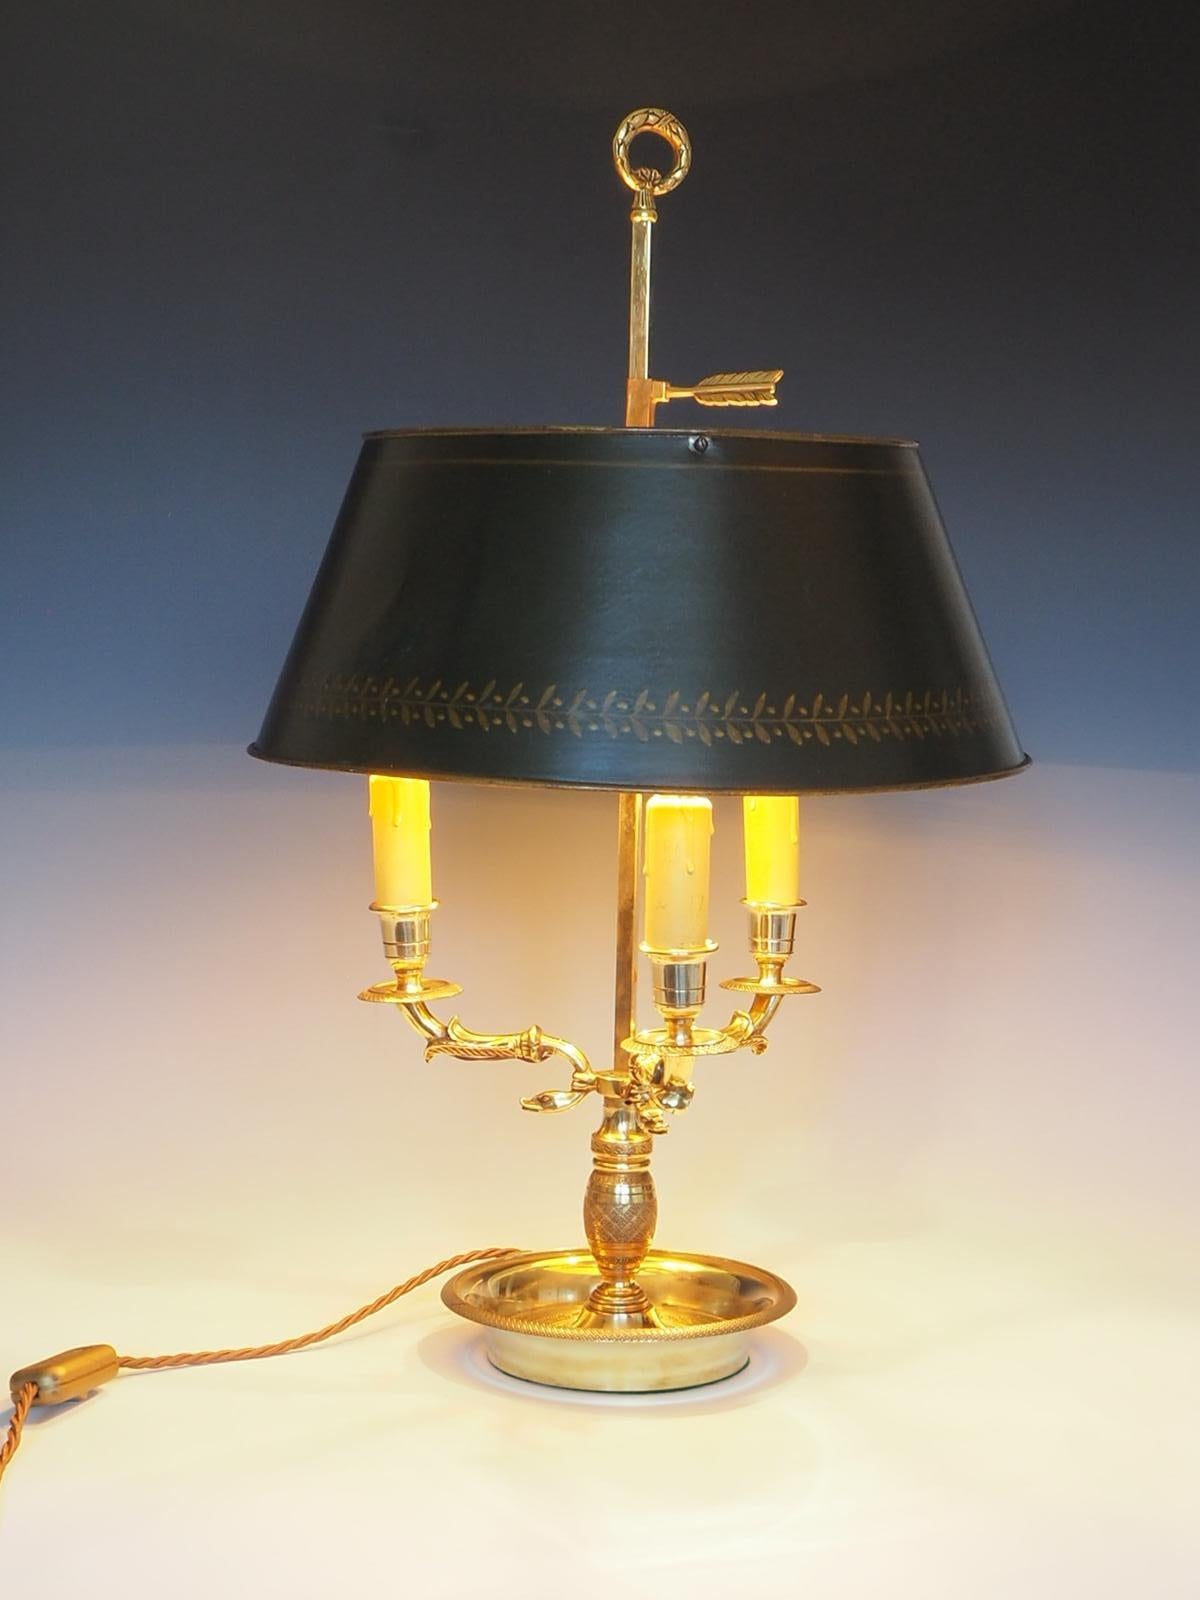 La lampe de table Bouillotte du 19ème siècle est une pièce étonnante fabriquée en laiton, avec une base à trois bras en forme de serpent et un abat-jour vert ajustable.

La lampe respire l'élégance et la sophistication, ce qui en fait un complément